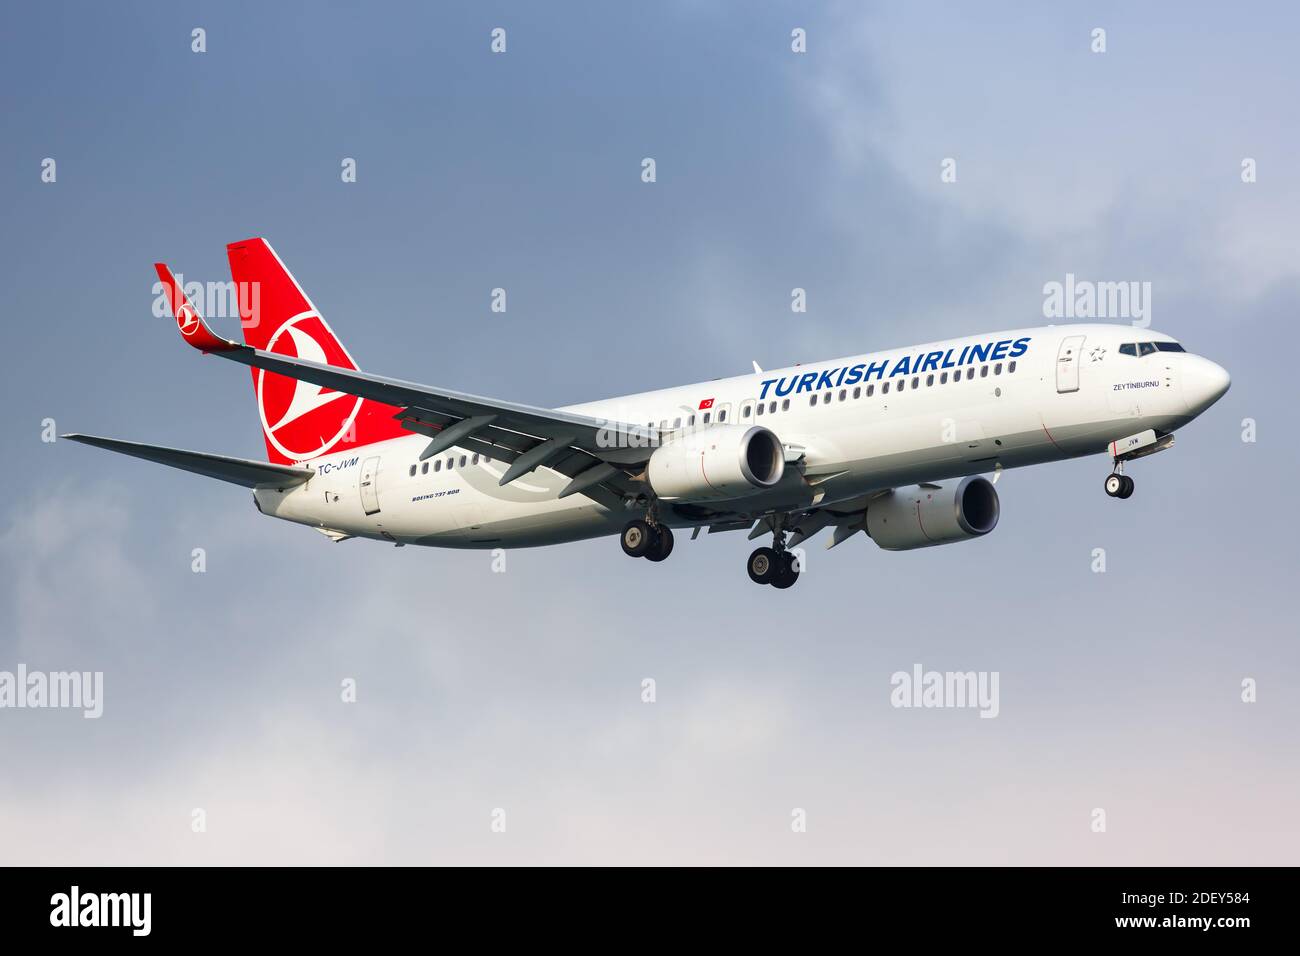 Istanbul, Turchia - 15 febbraio 2019: Turkish Airlines Boeing 737-800 aereo all'aeroporto Ataturk di Istanbul (IST) in Turchia. Boeing è un aereo americano Foto Stock